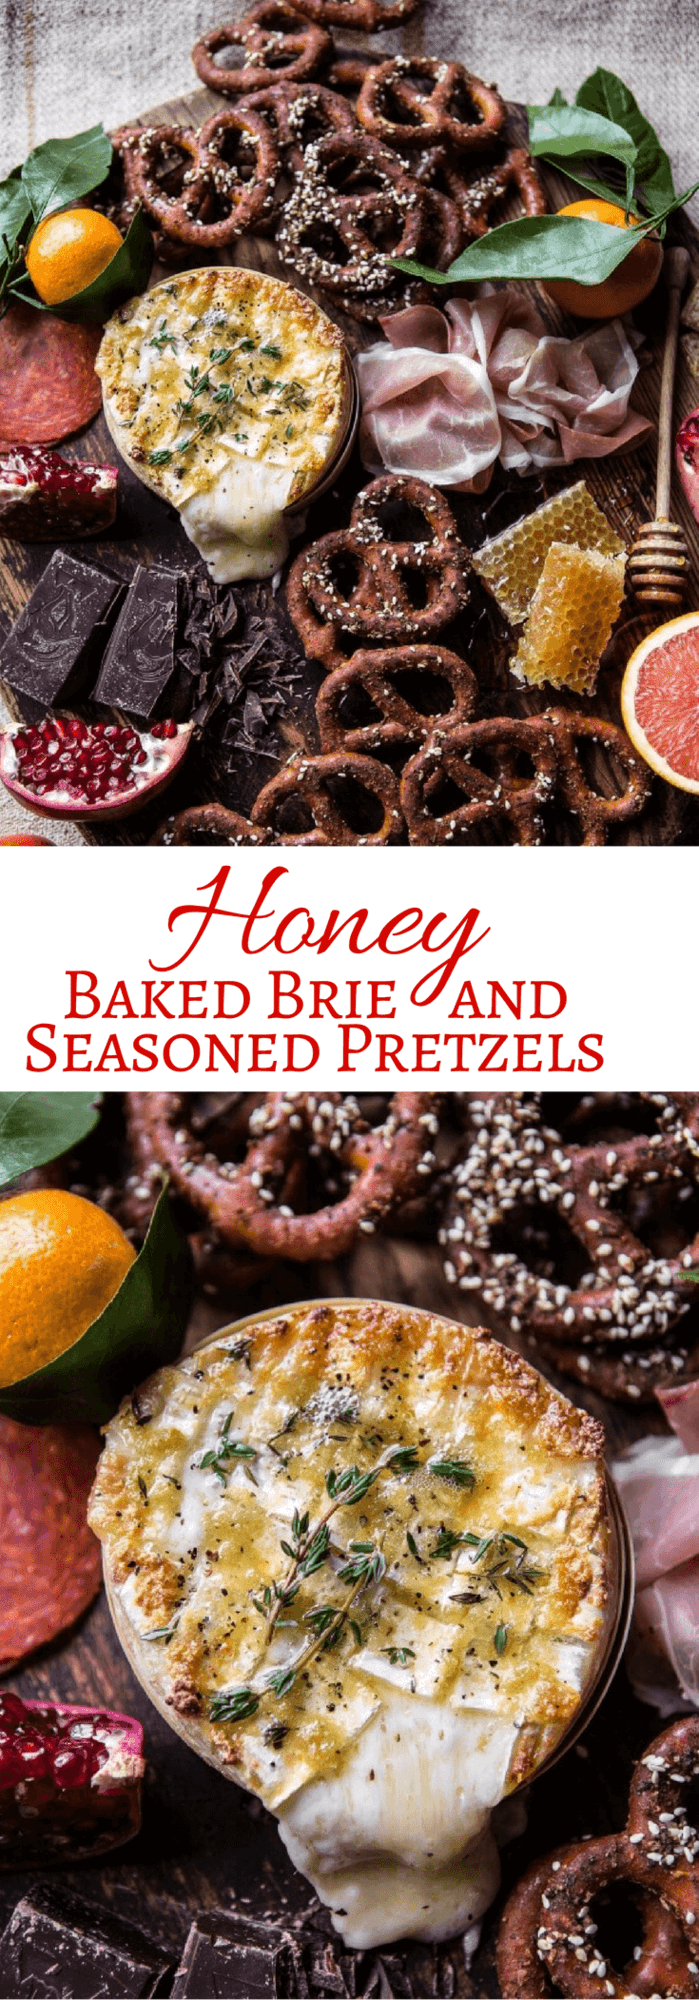 Honey Baked Brie and Seasoned Pretzels | halfbakedharvest.com @hbharvest